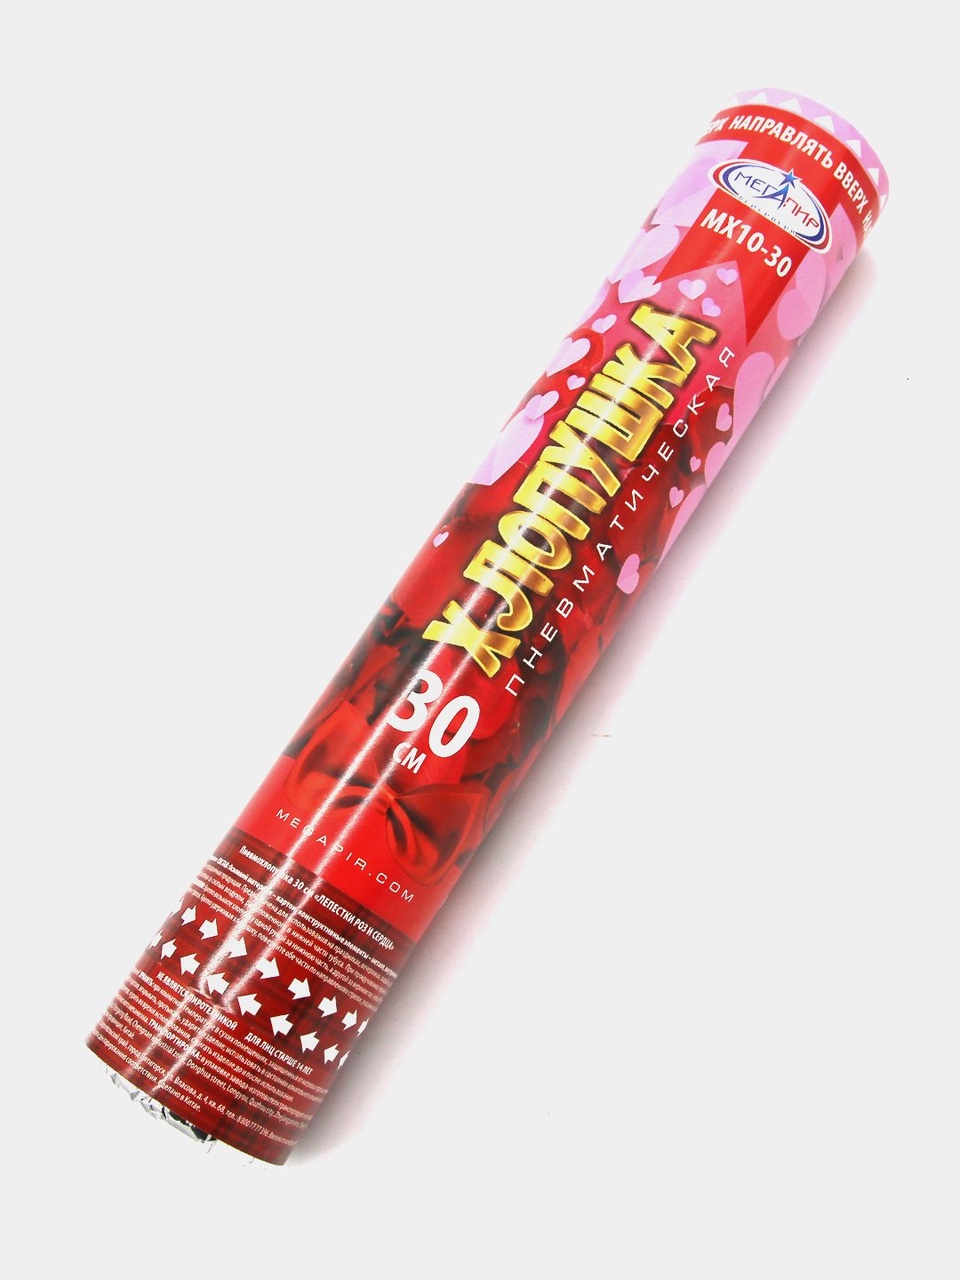 Пневматическая хлопушка 30 см наполнитель конфетти лепестки роз из ткани + розовые сердца из бумаги МХ10-30 - 200 ₽, заказать онлайн.